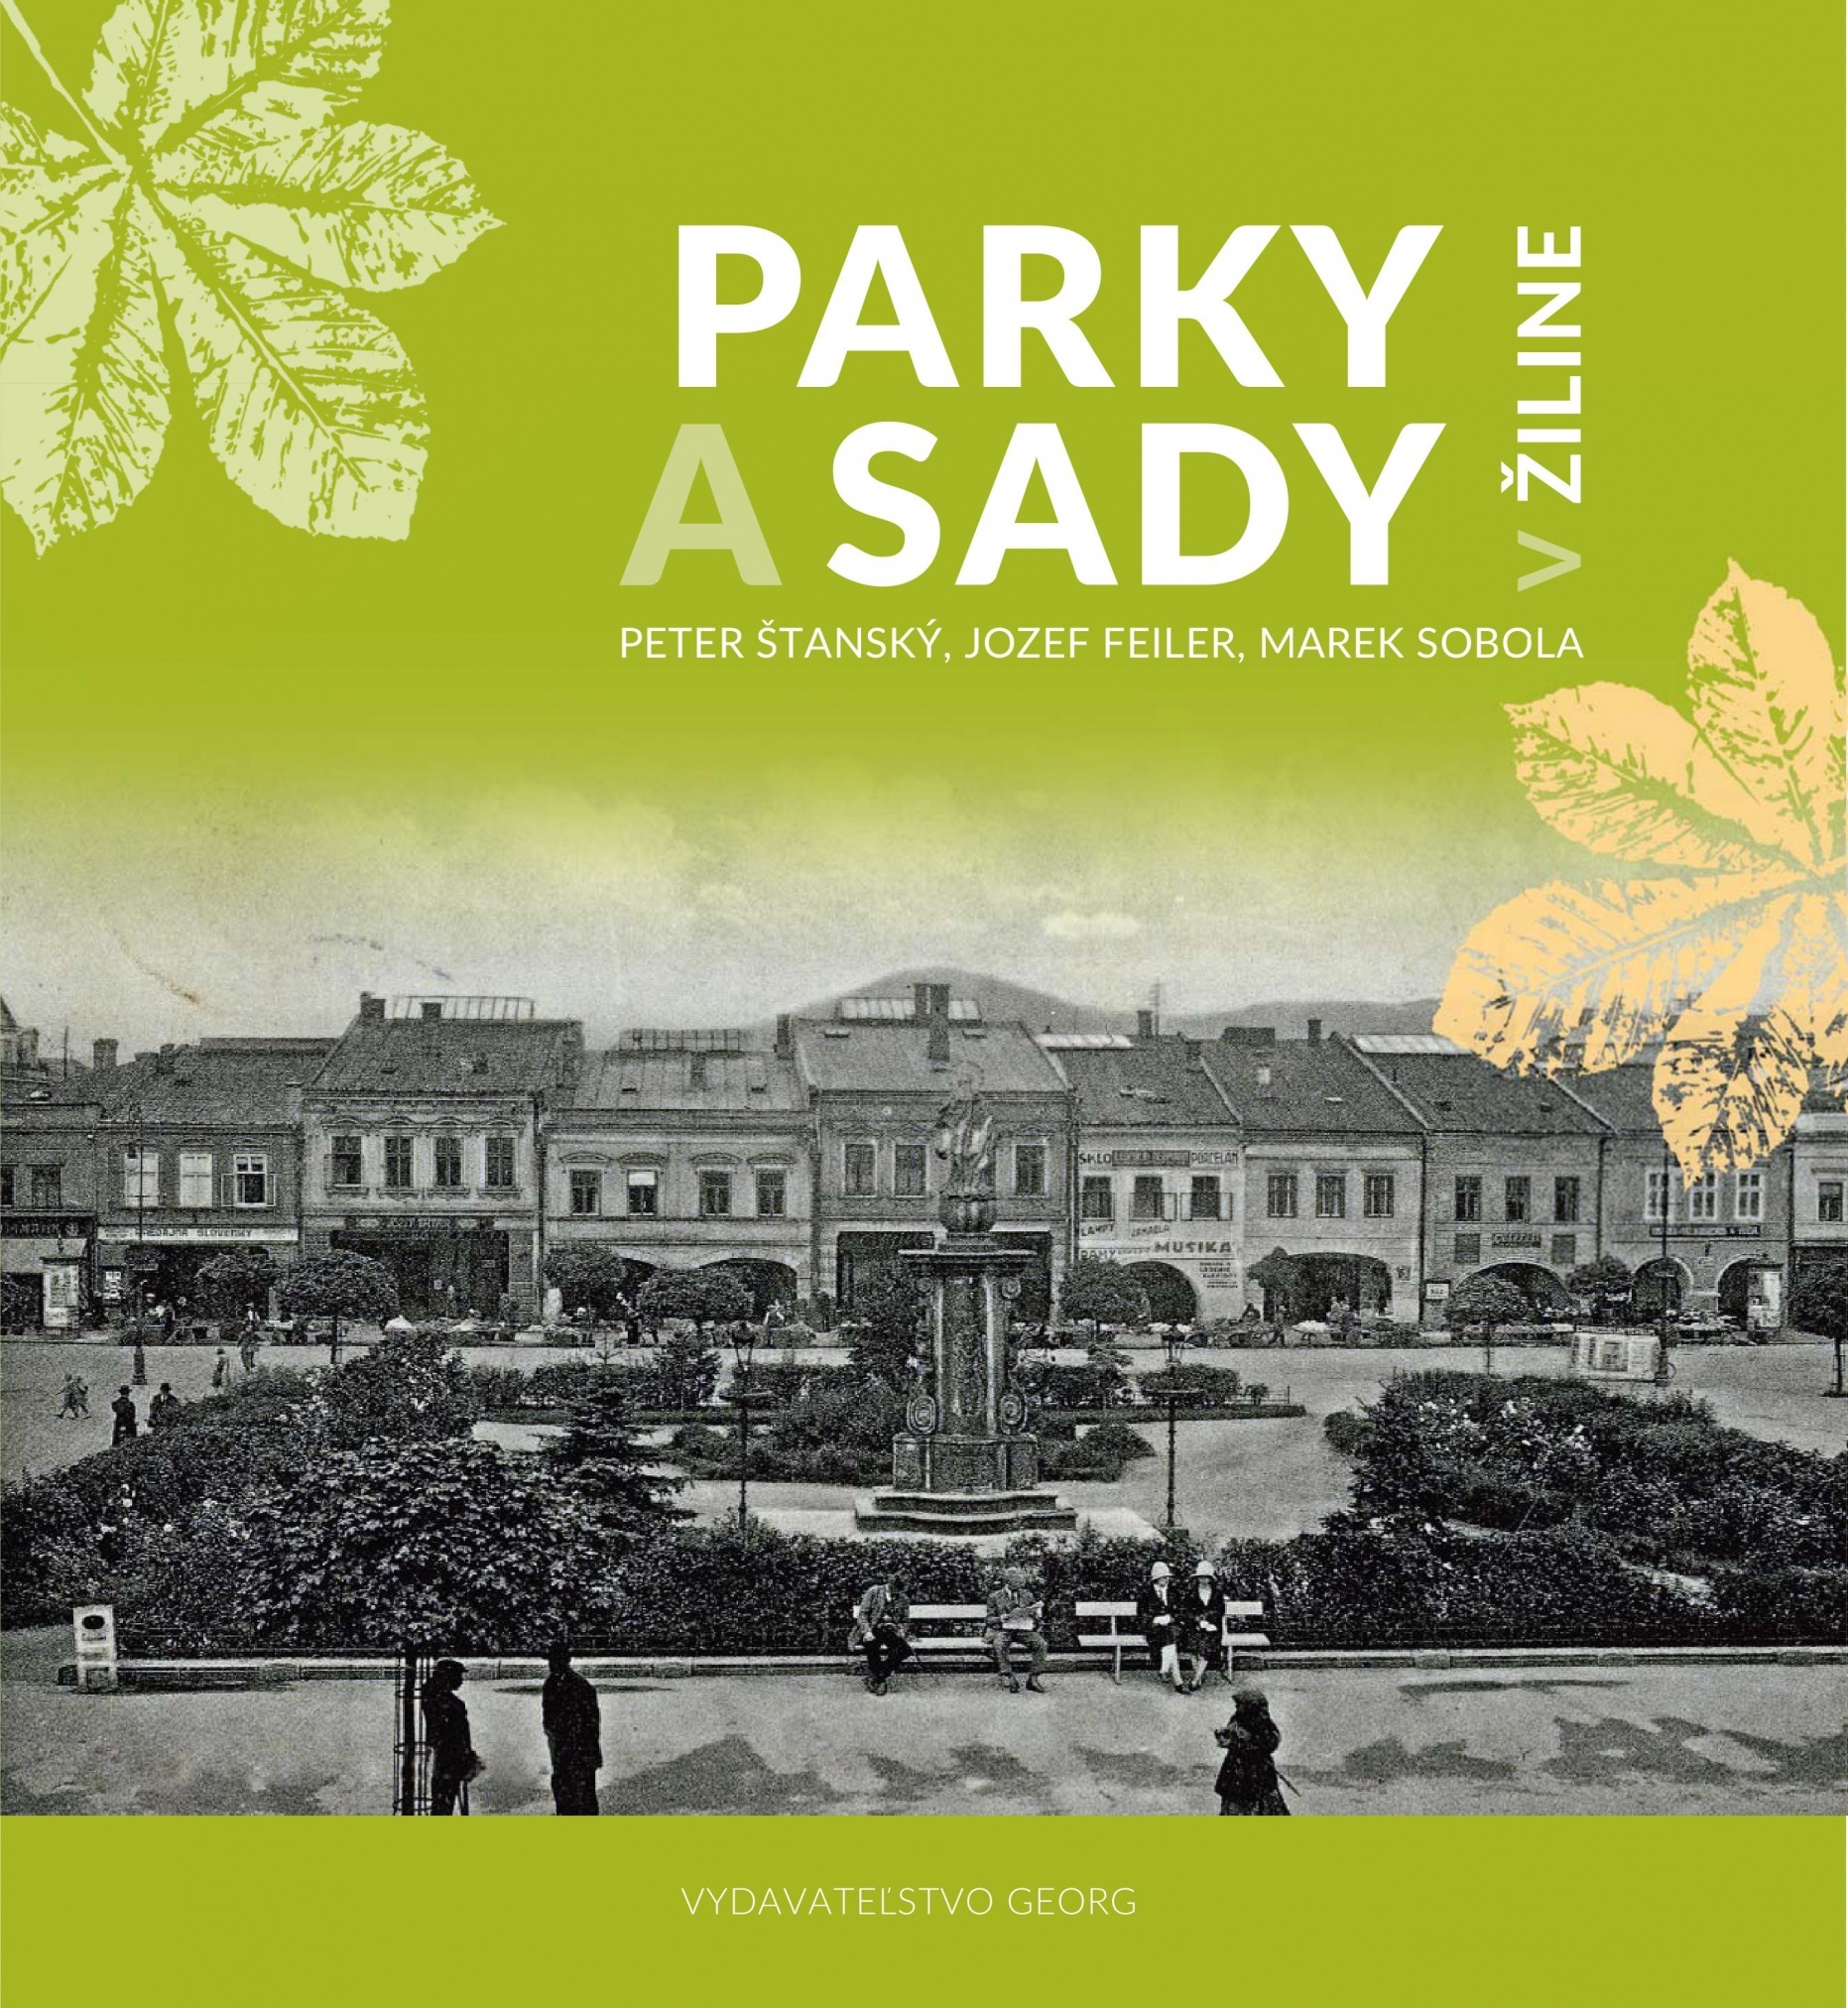 Podporili sme vydanie knihy Parky a sady v Žiline